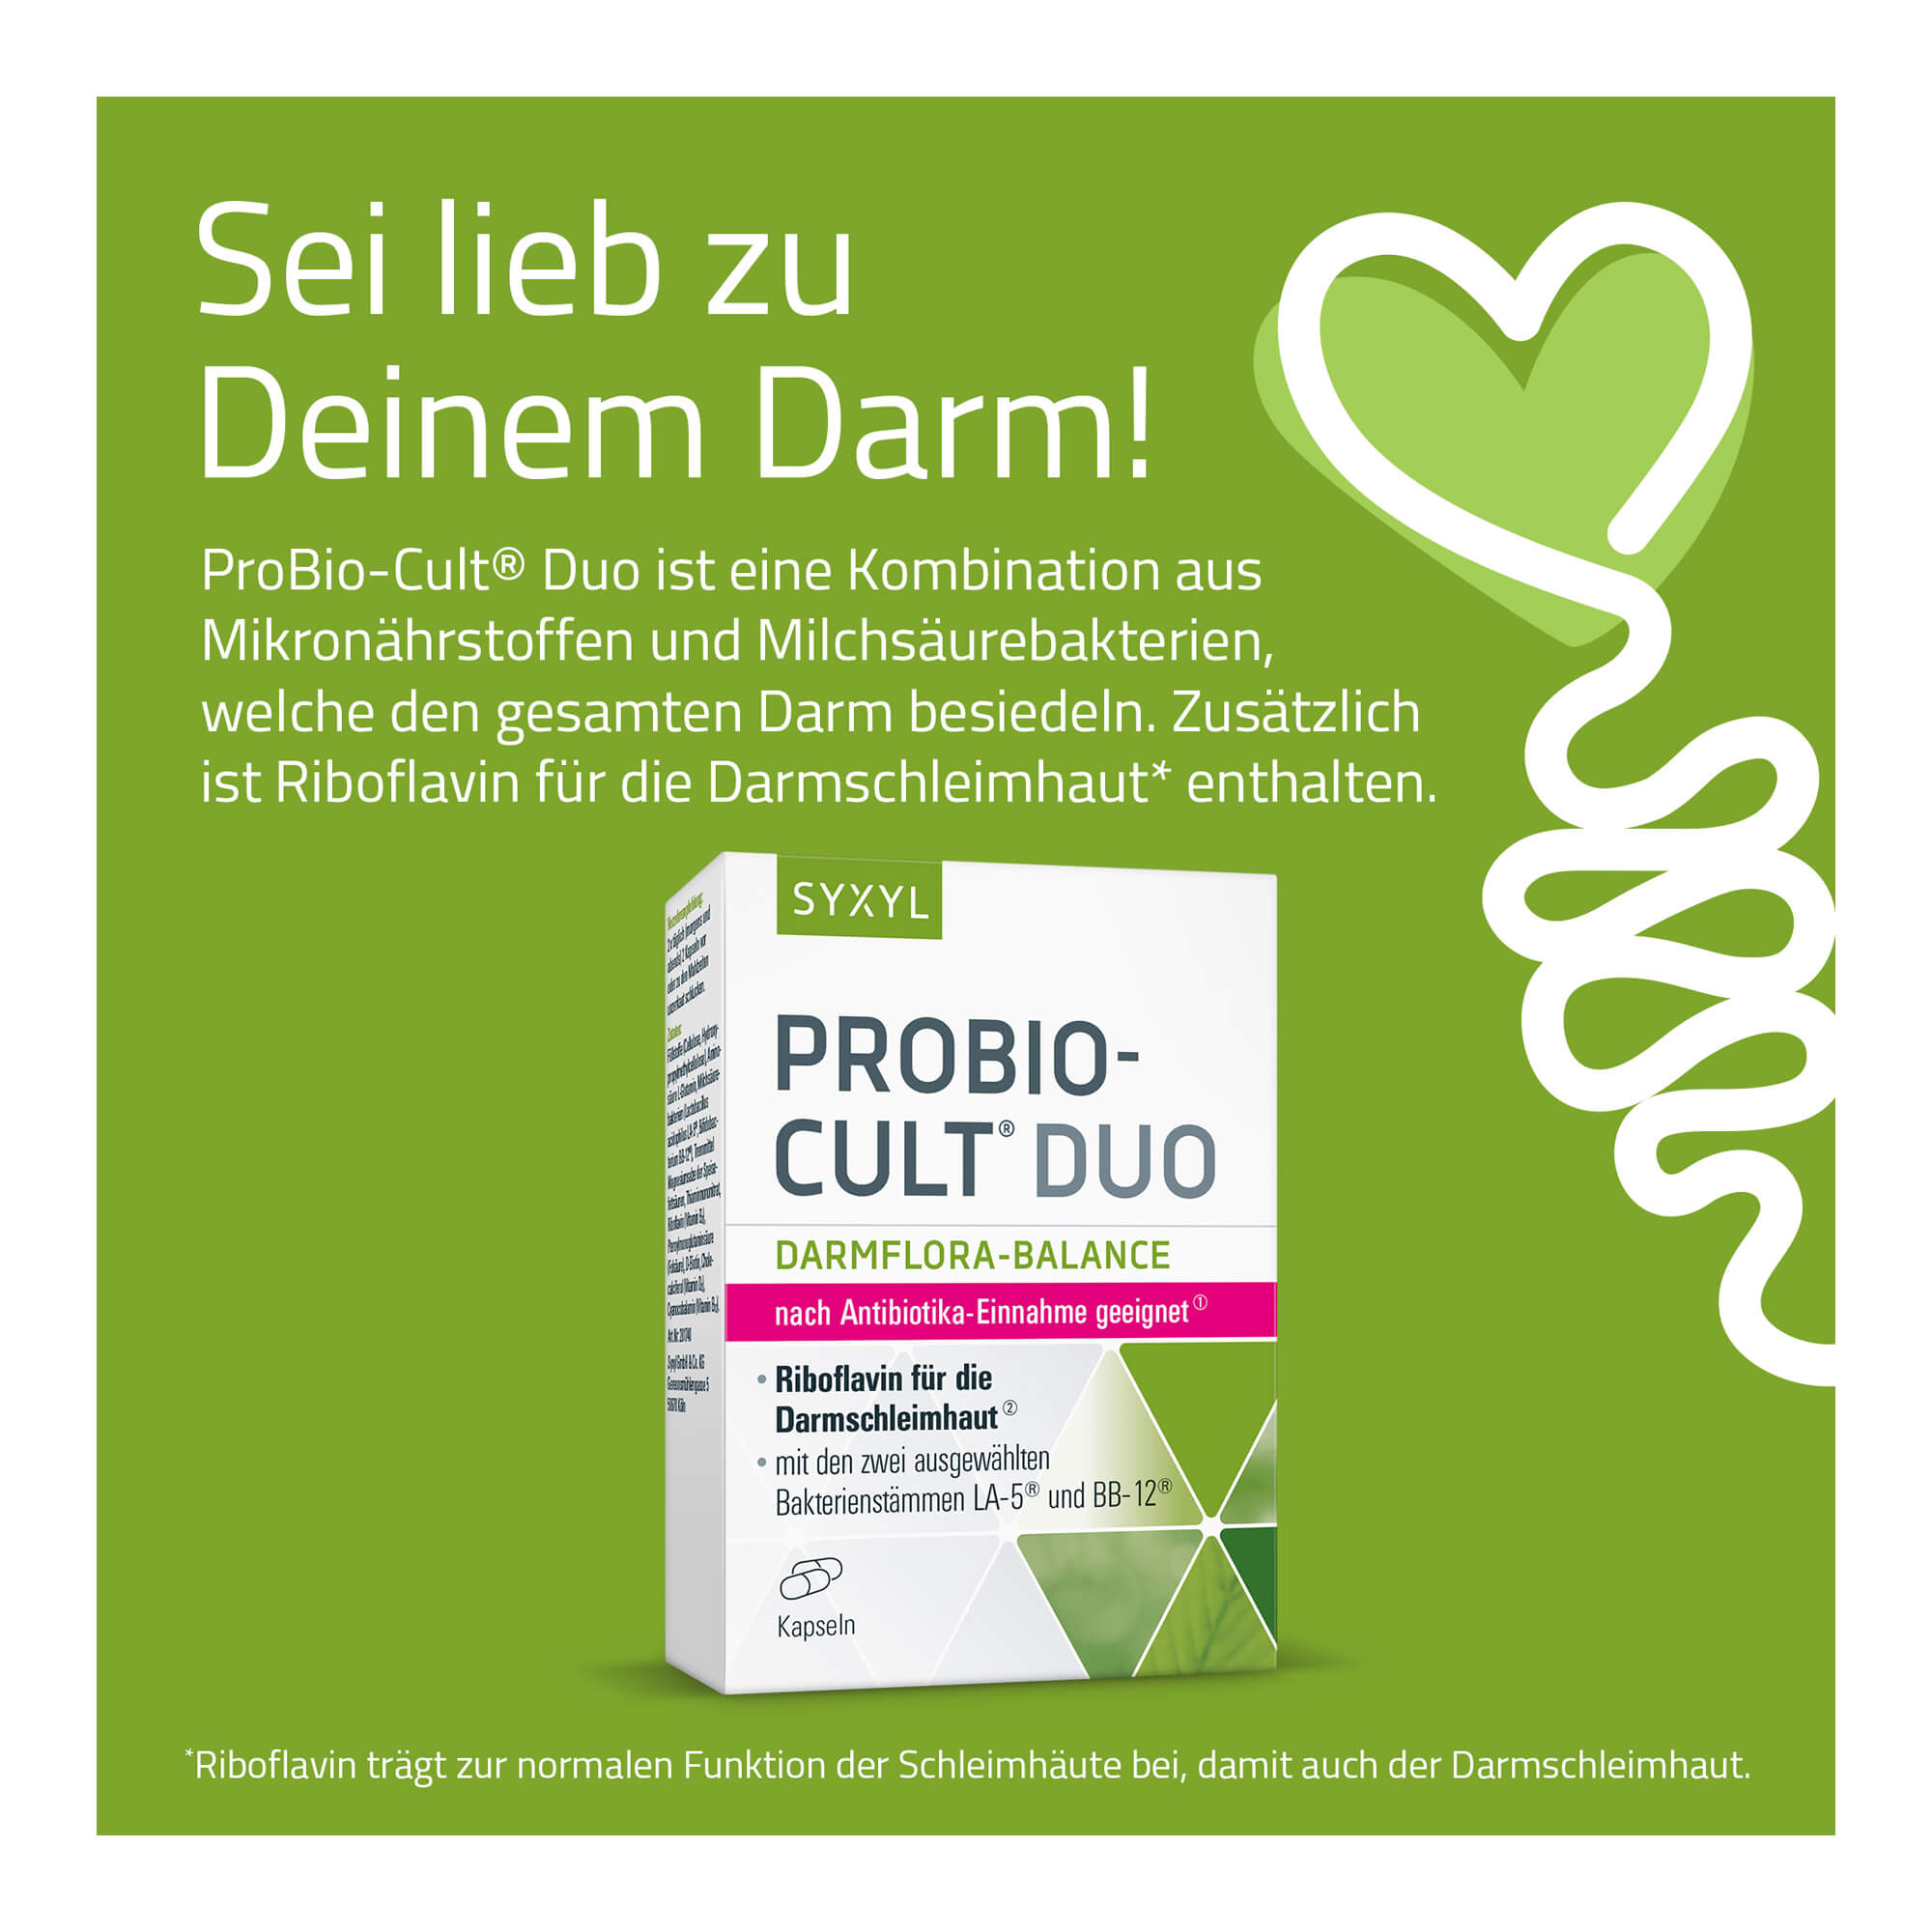 Grafik Probio-Cult Duo ist eine Kombination aus Mikronährstoffen und Milchsäurebakterien, welche den gesamten Darm besiedeln.